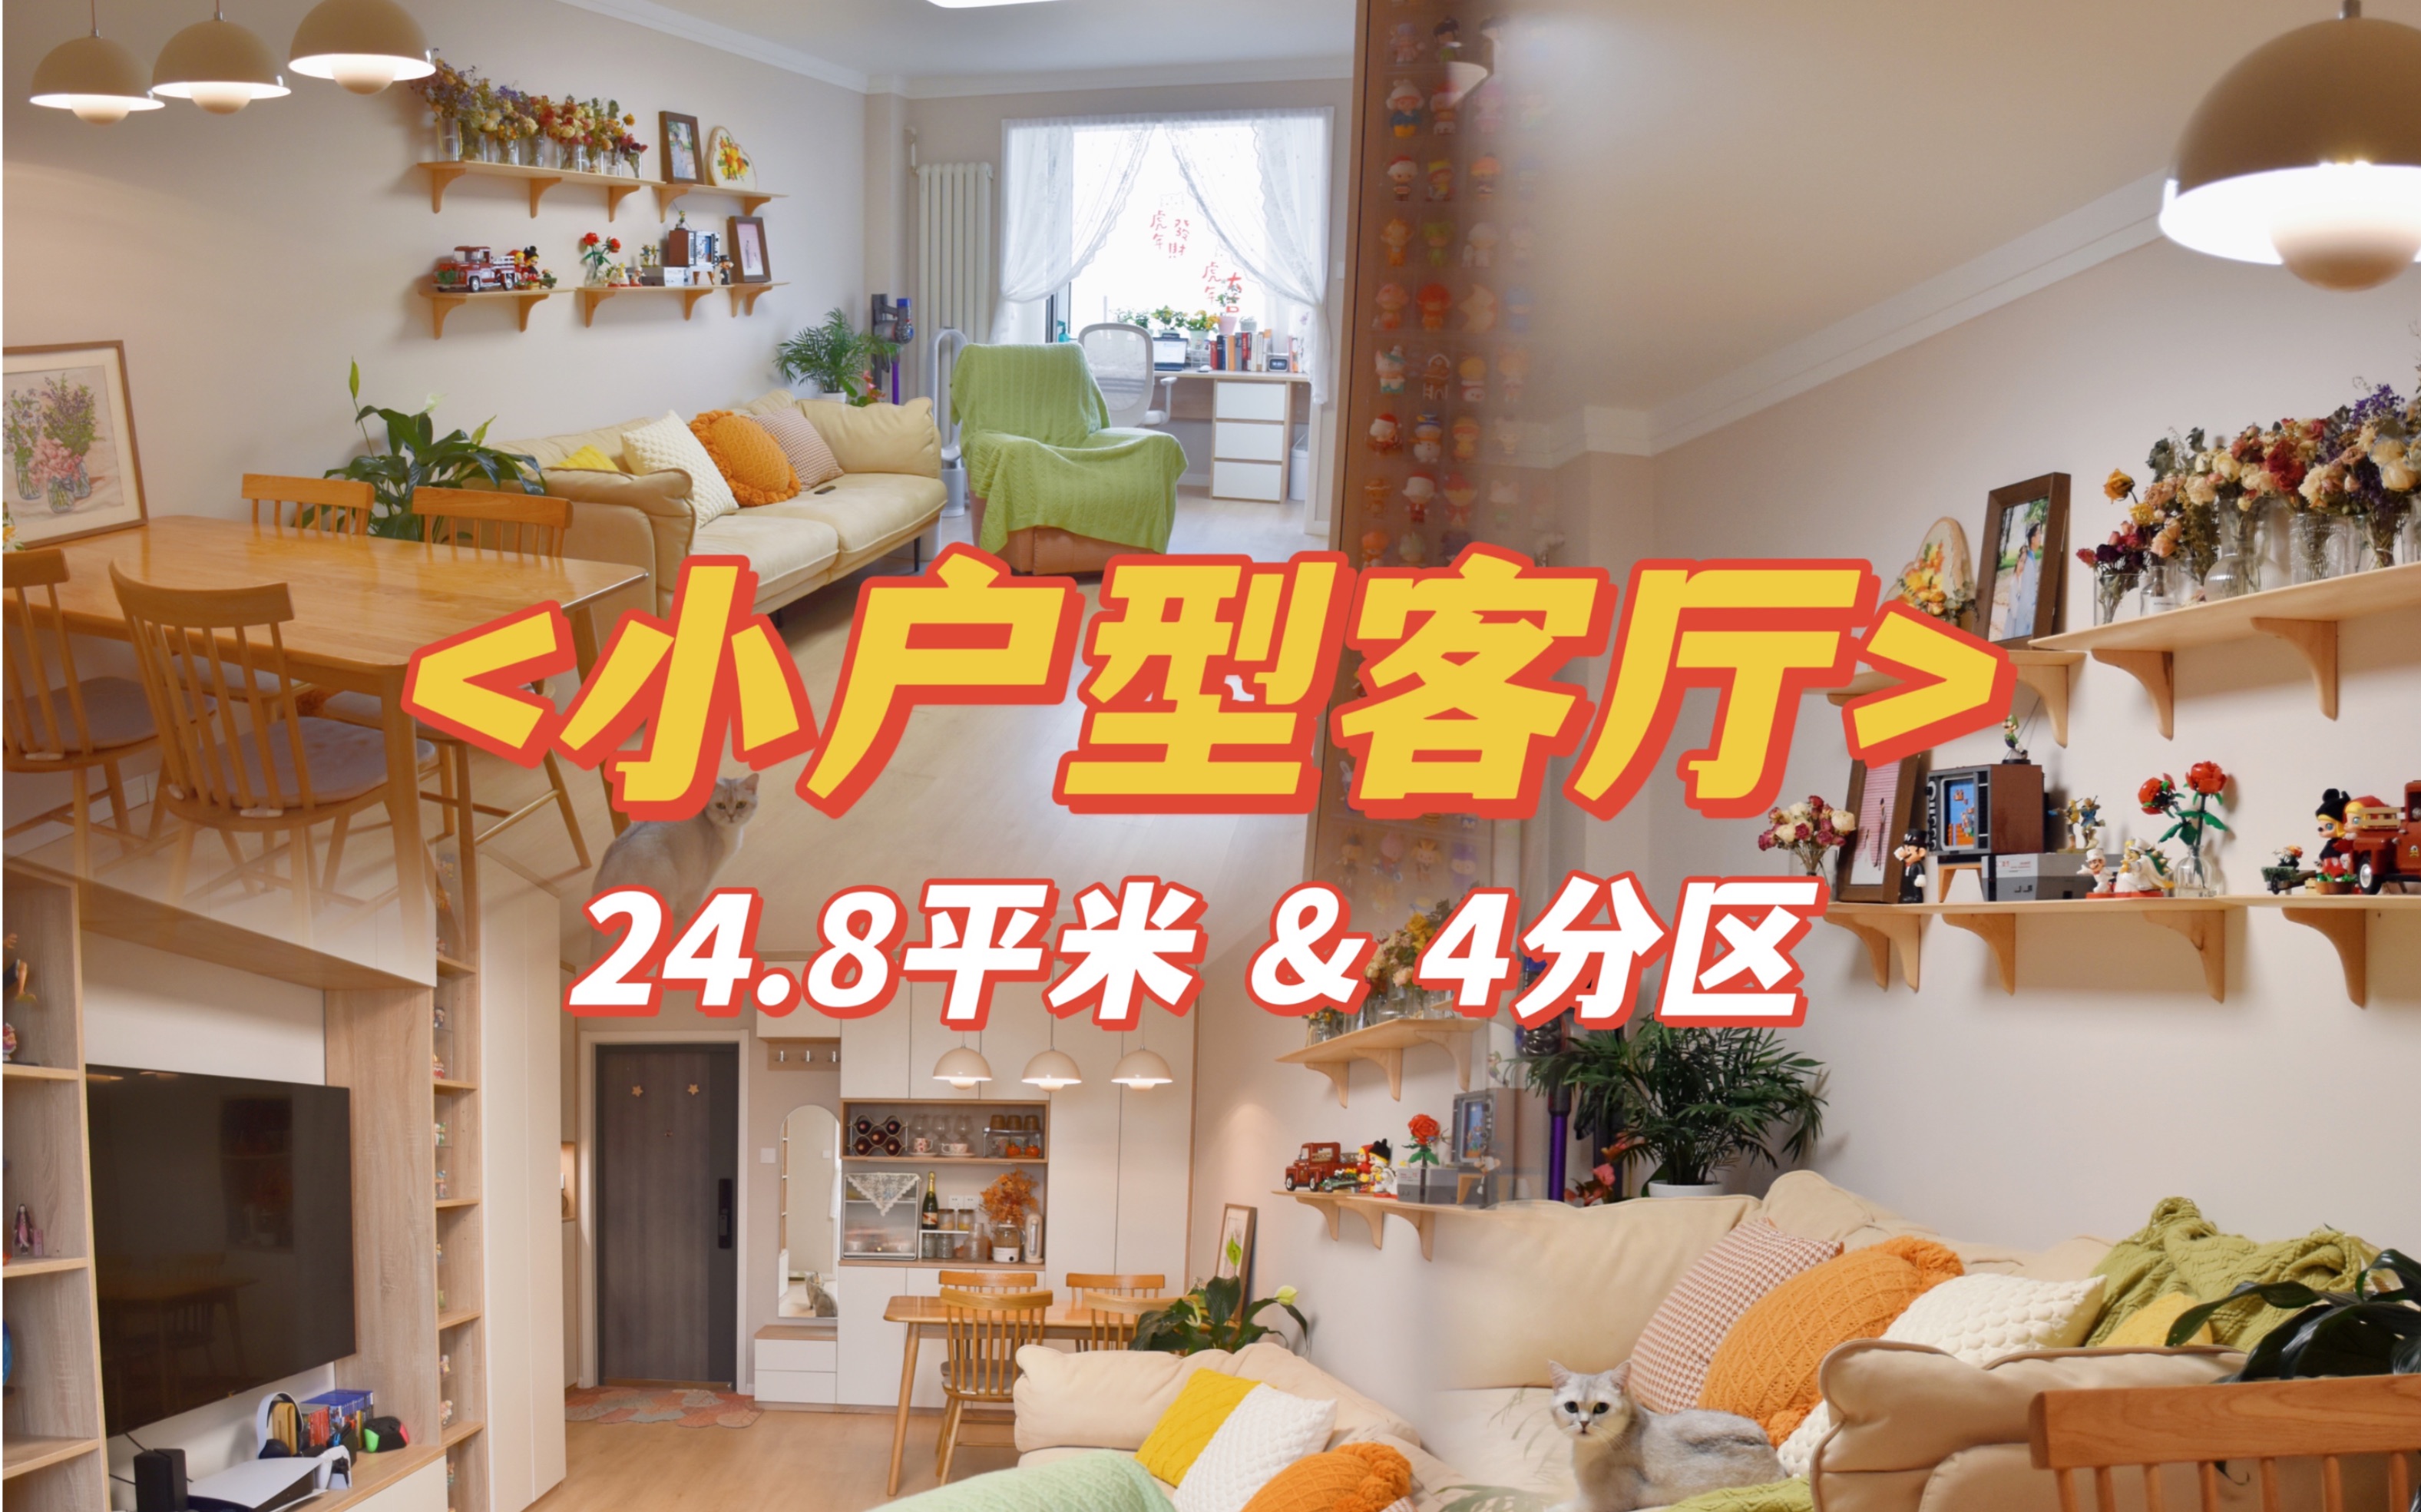 小户型客厅布置思路｜24.8平米4分区｜温馨且实用